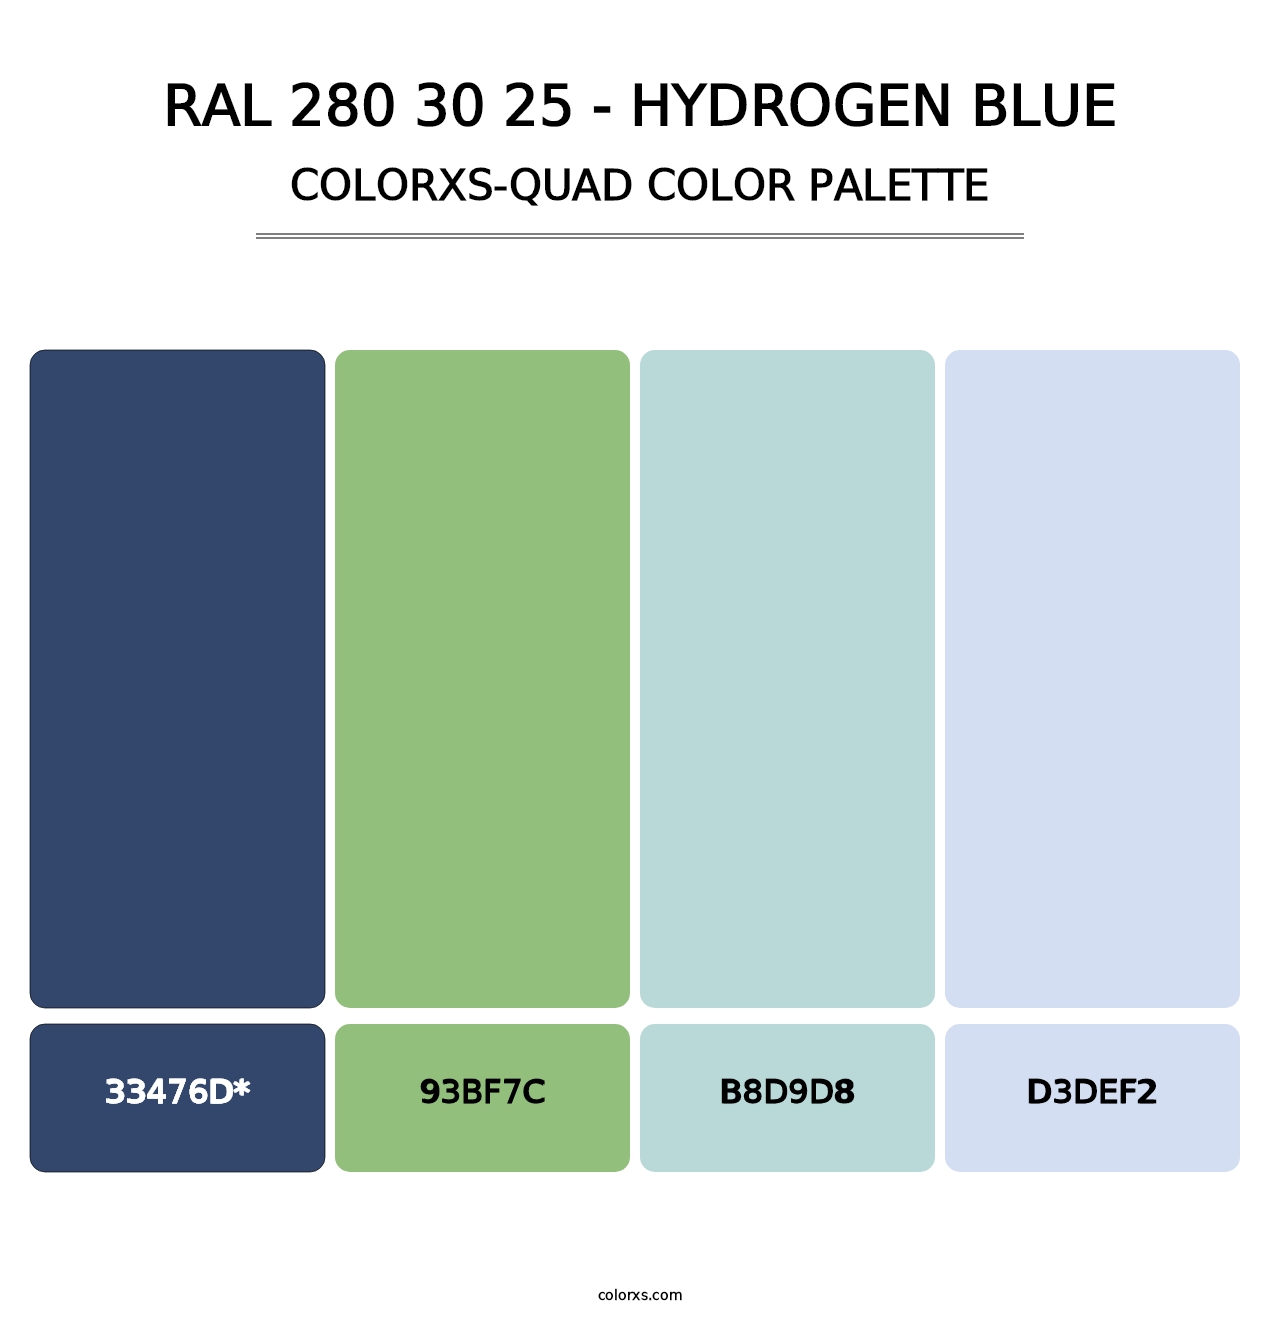 RAL 280 30 25 - Hydrogen Blue - Colorxs Quad Palette